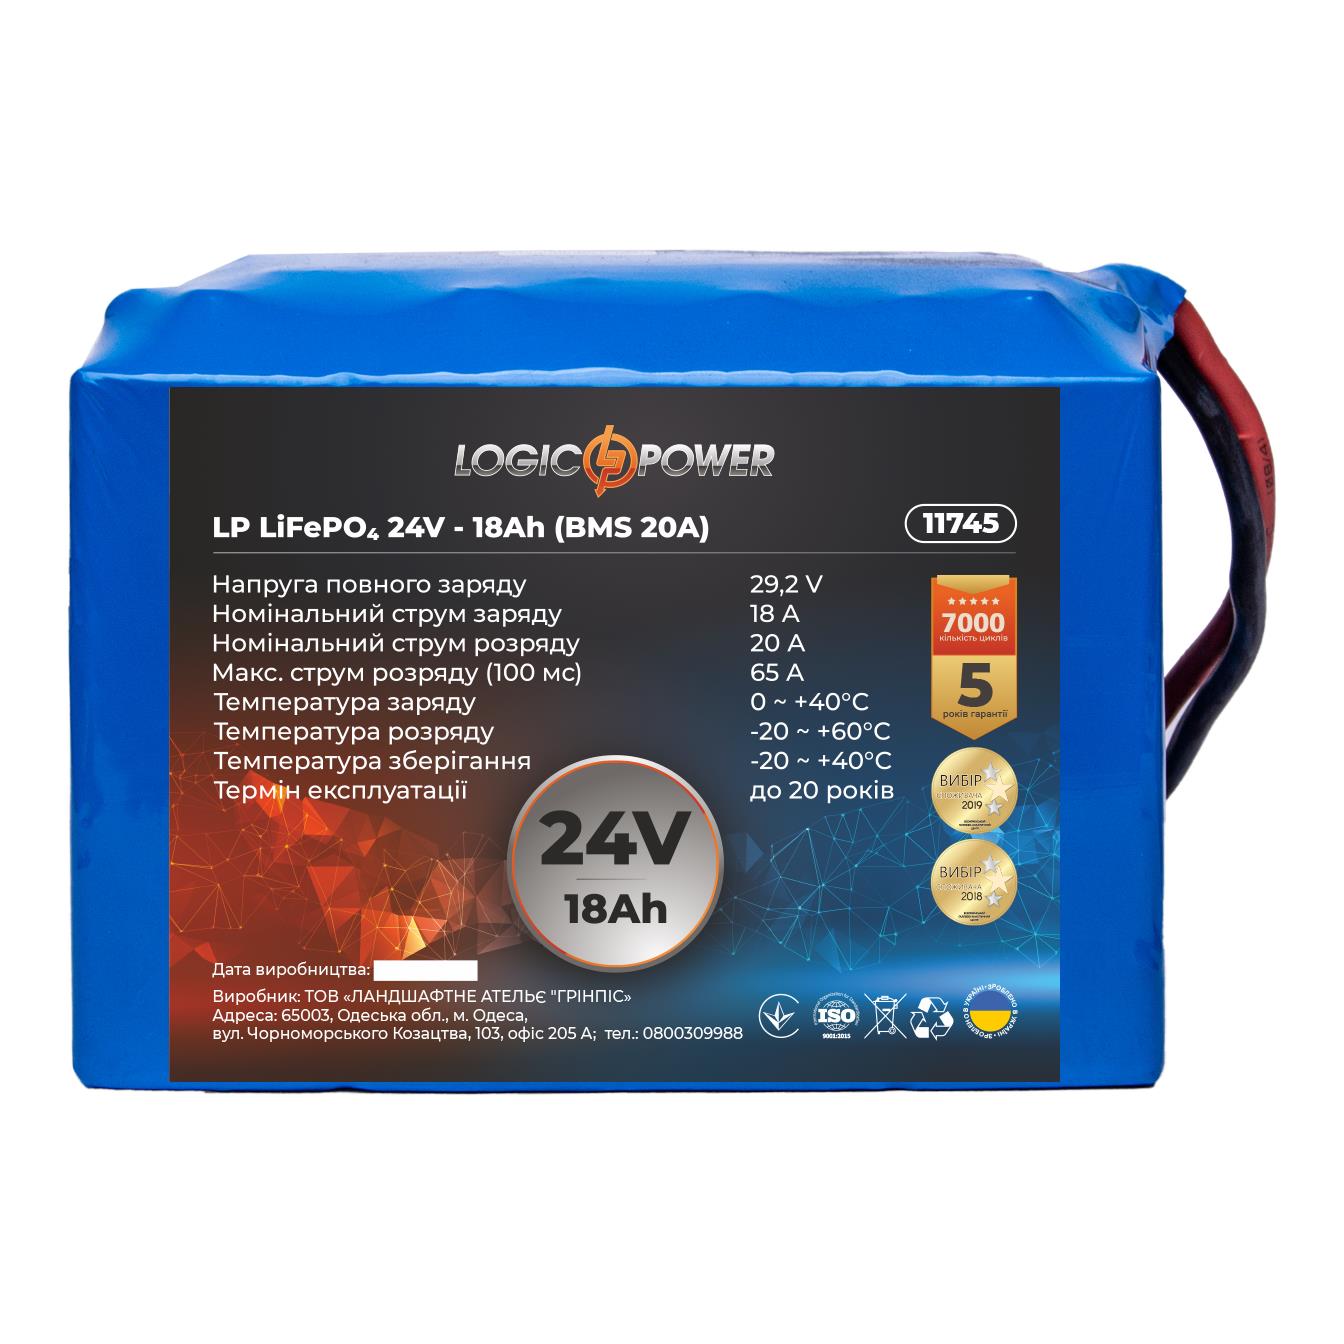 Акумулятор літій-залізо-фосфатний LogicPower LP LiFePO4 24V - 18 Ah (BMS 20A) (11745) в інтернет-магазині, головне фото